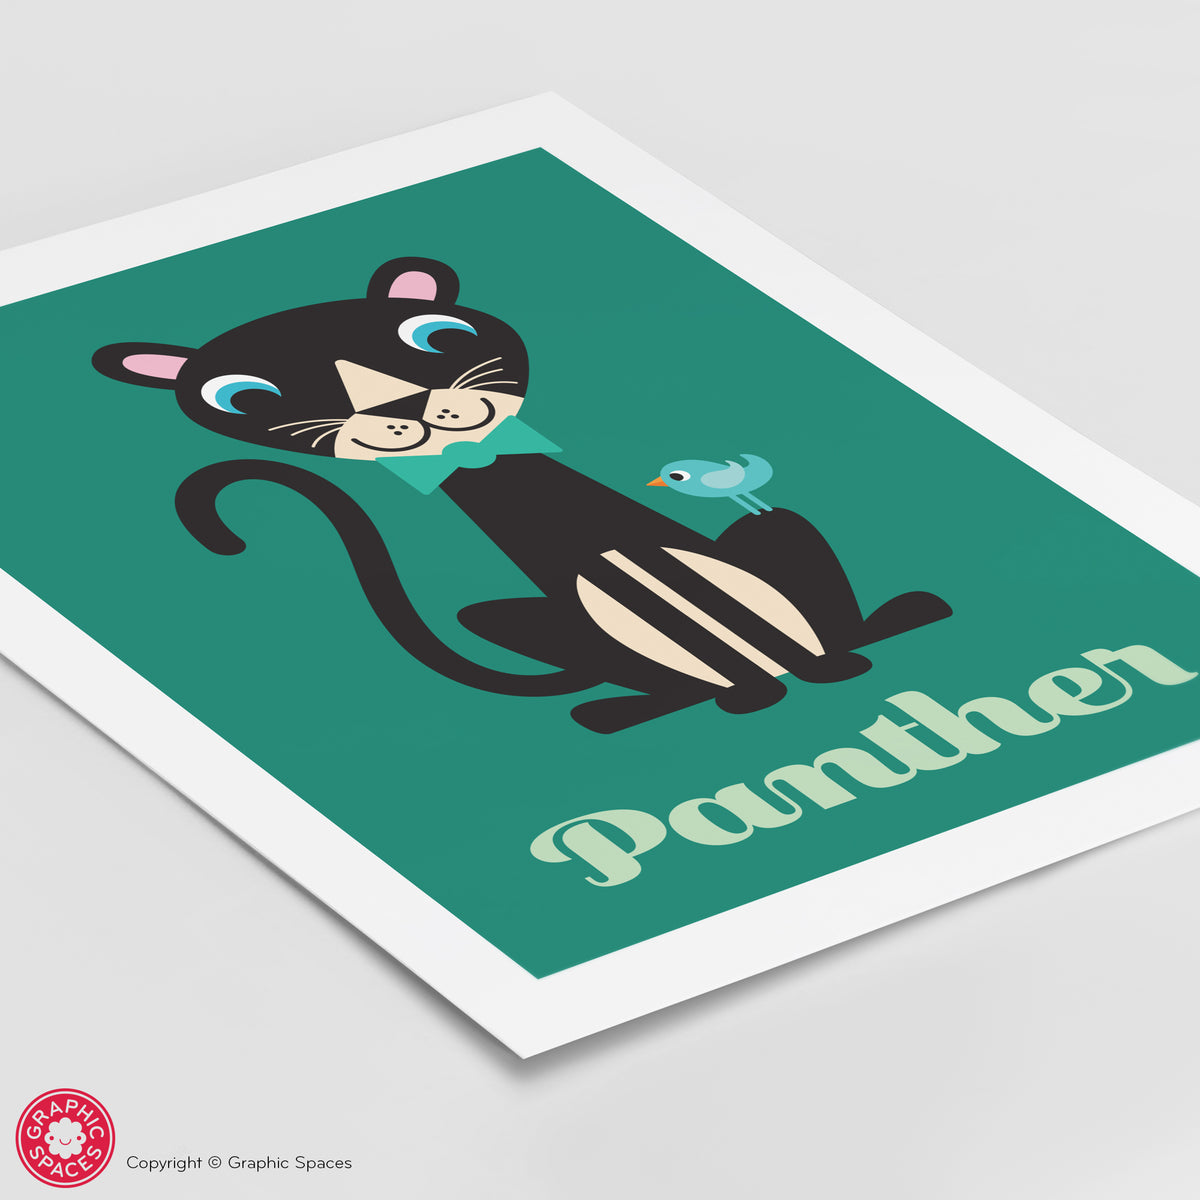 Panther Art Print